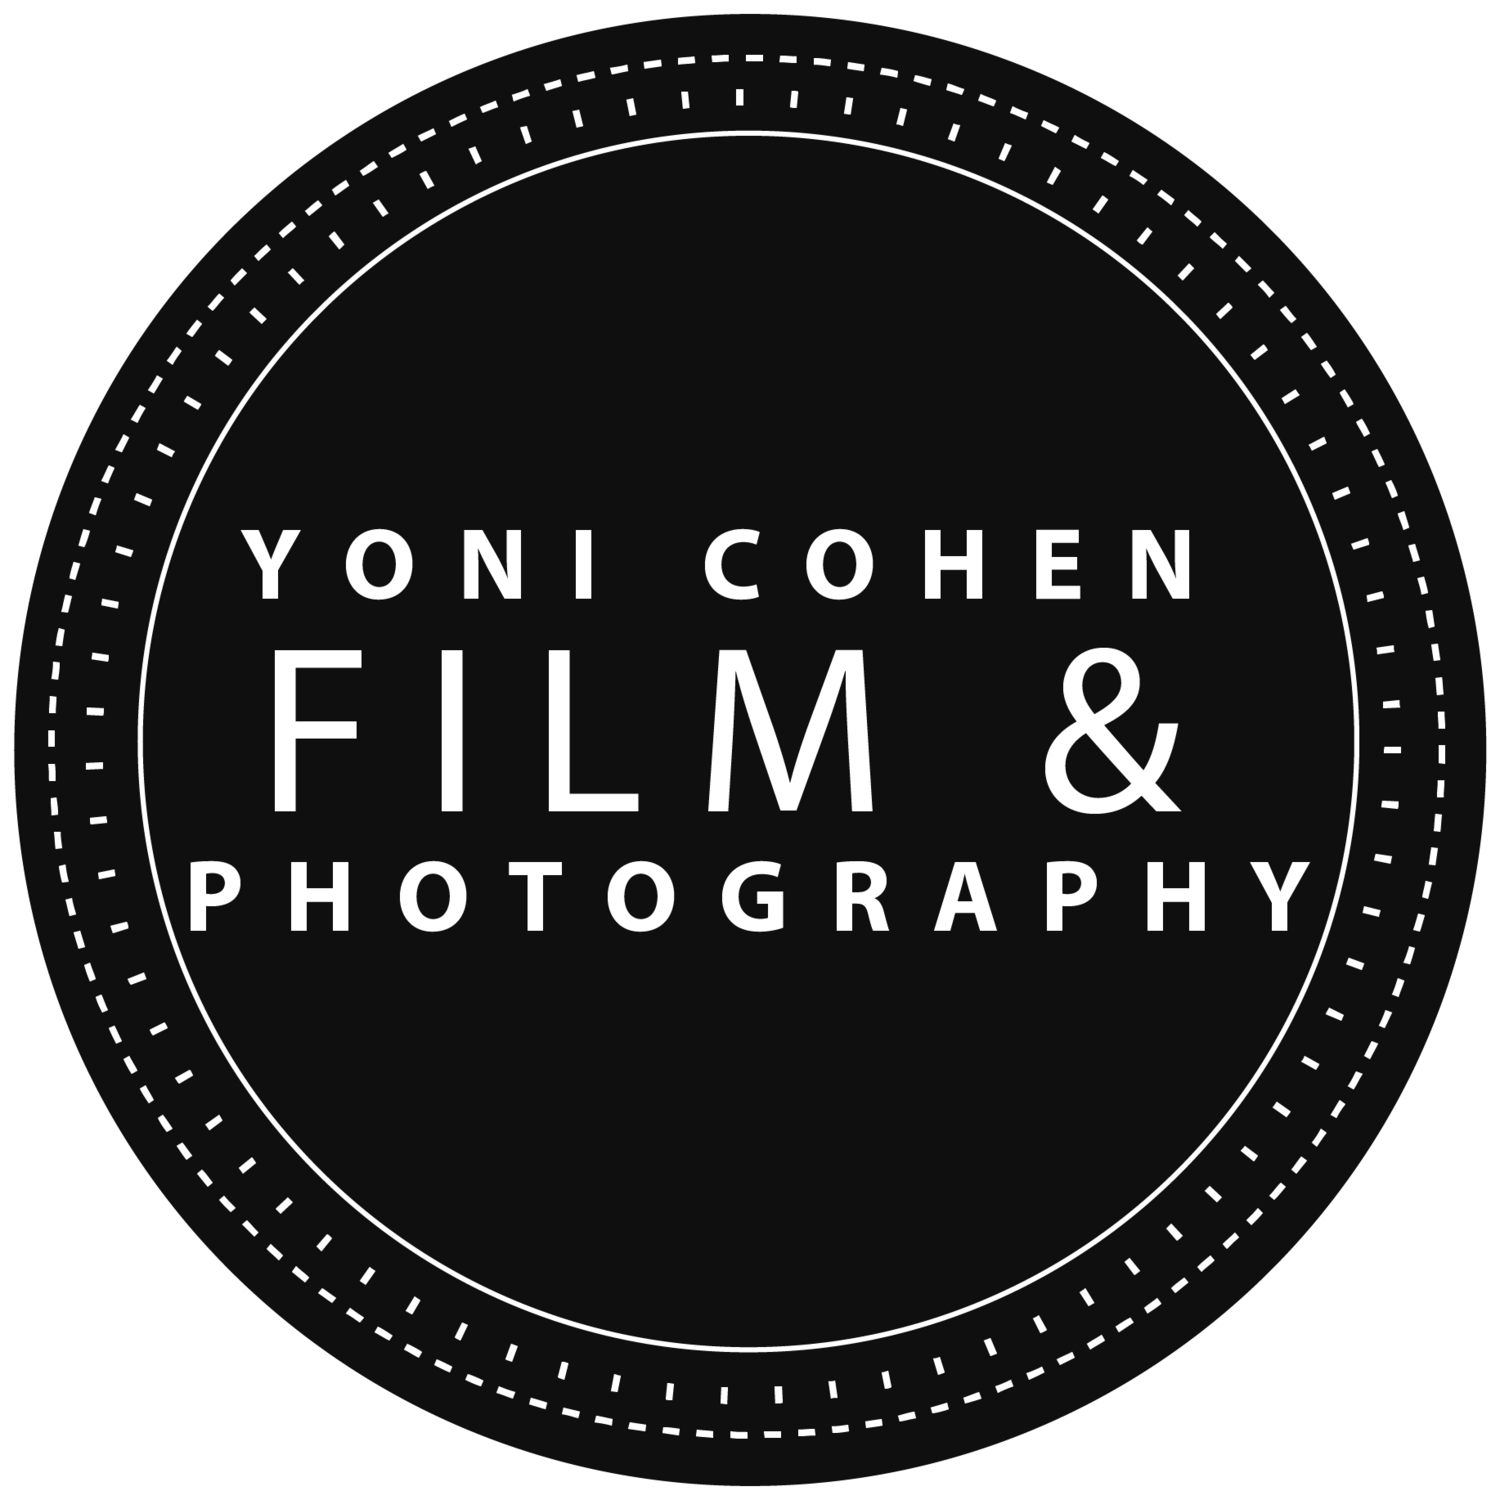 Yoni Cohen Film